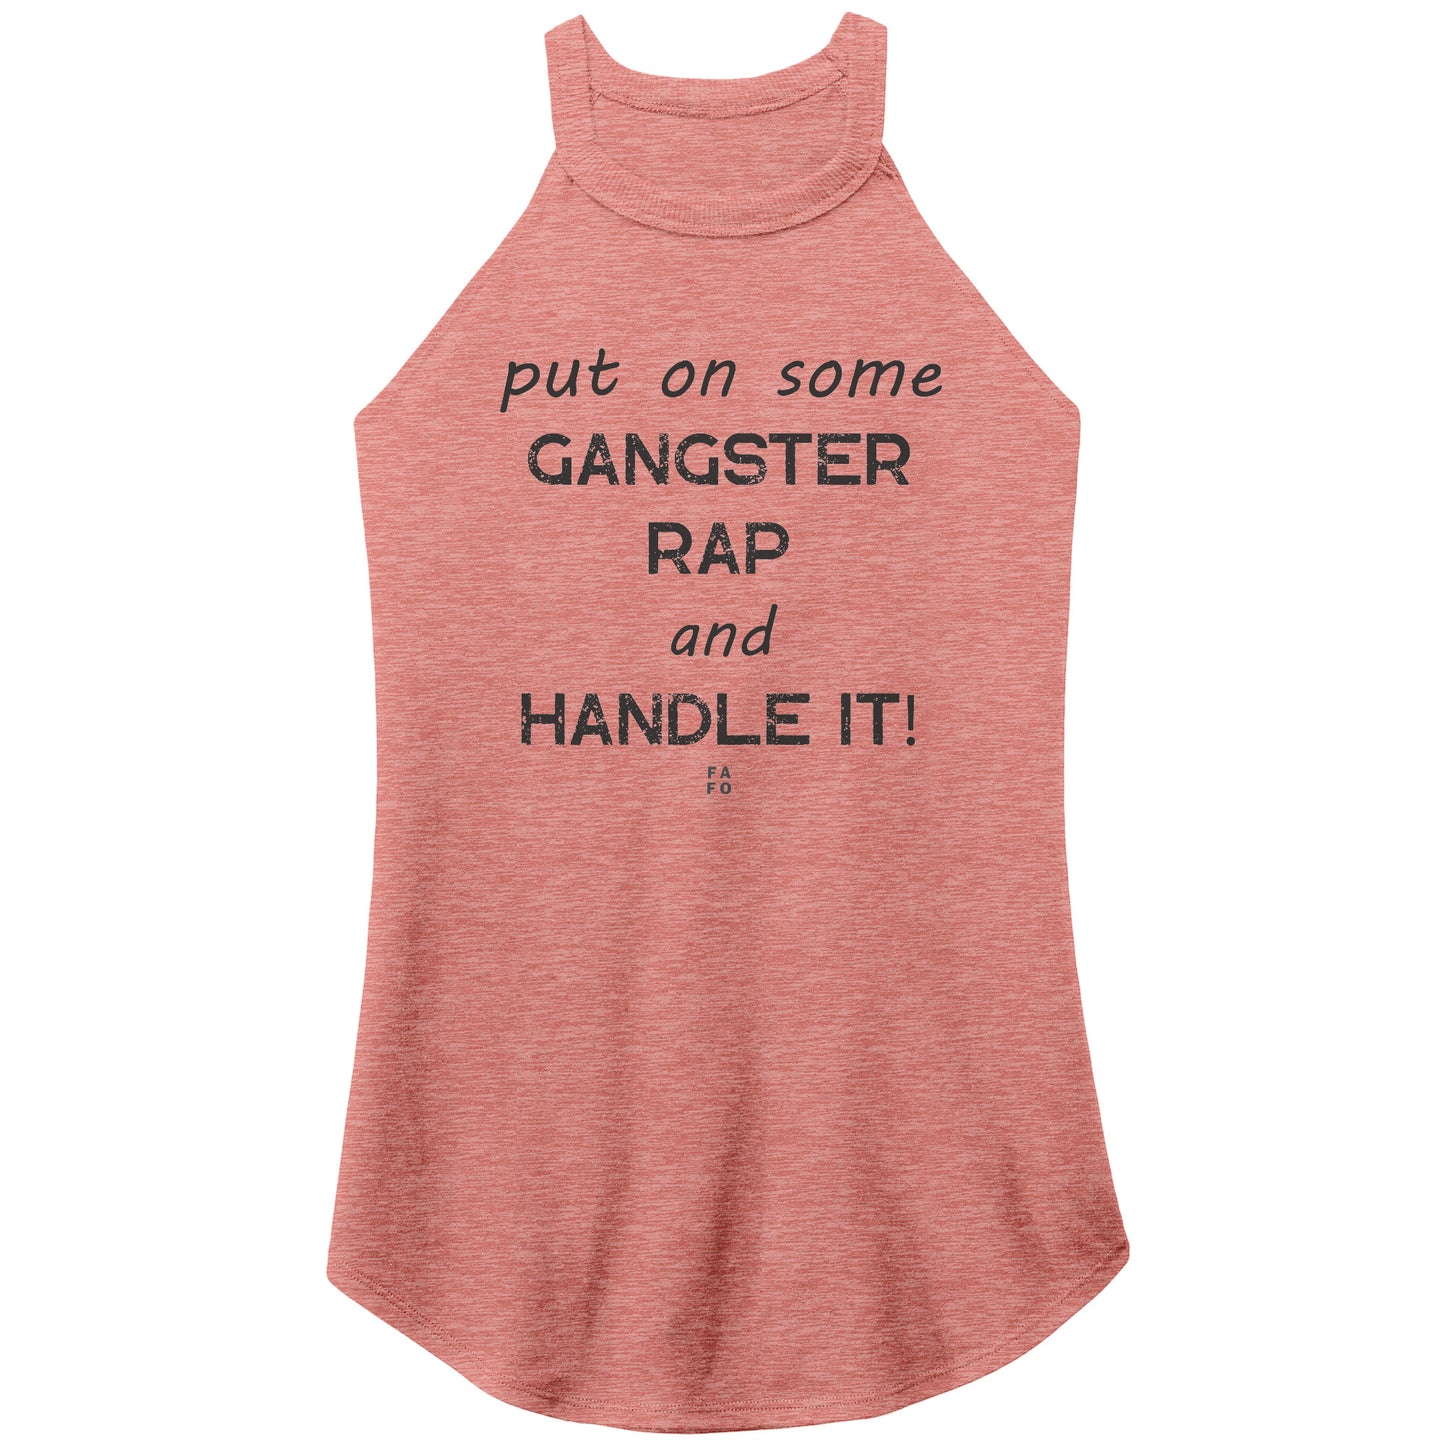 Rocker Tank - Gangster Rap - FAFO Sportswear